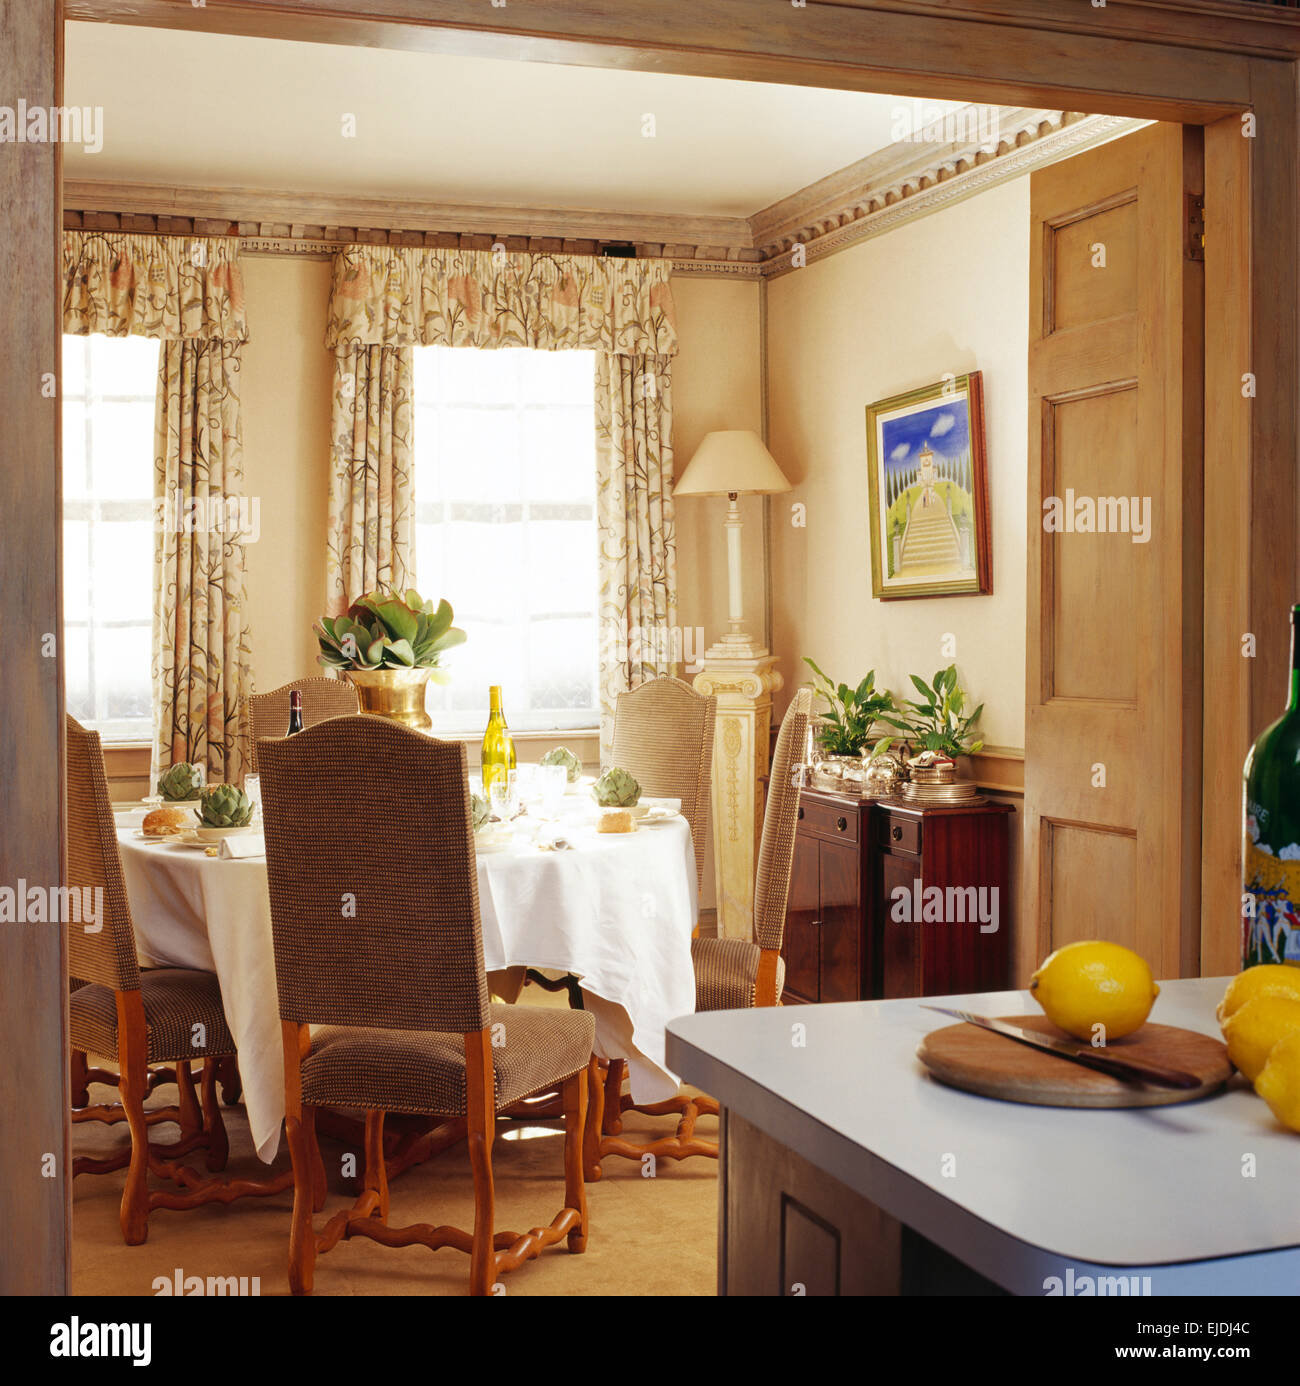 COMO ADAPTAR UNA FUNDA SILLA COMEDOR - Buscar con Google  Elegant dining  room, Country dining, Dining room table settings